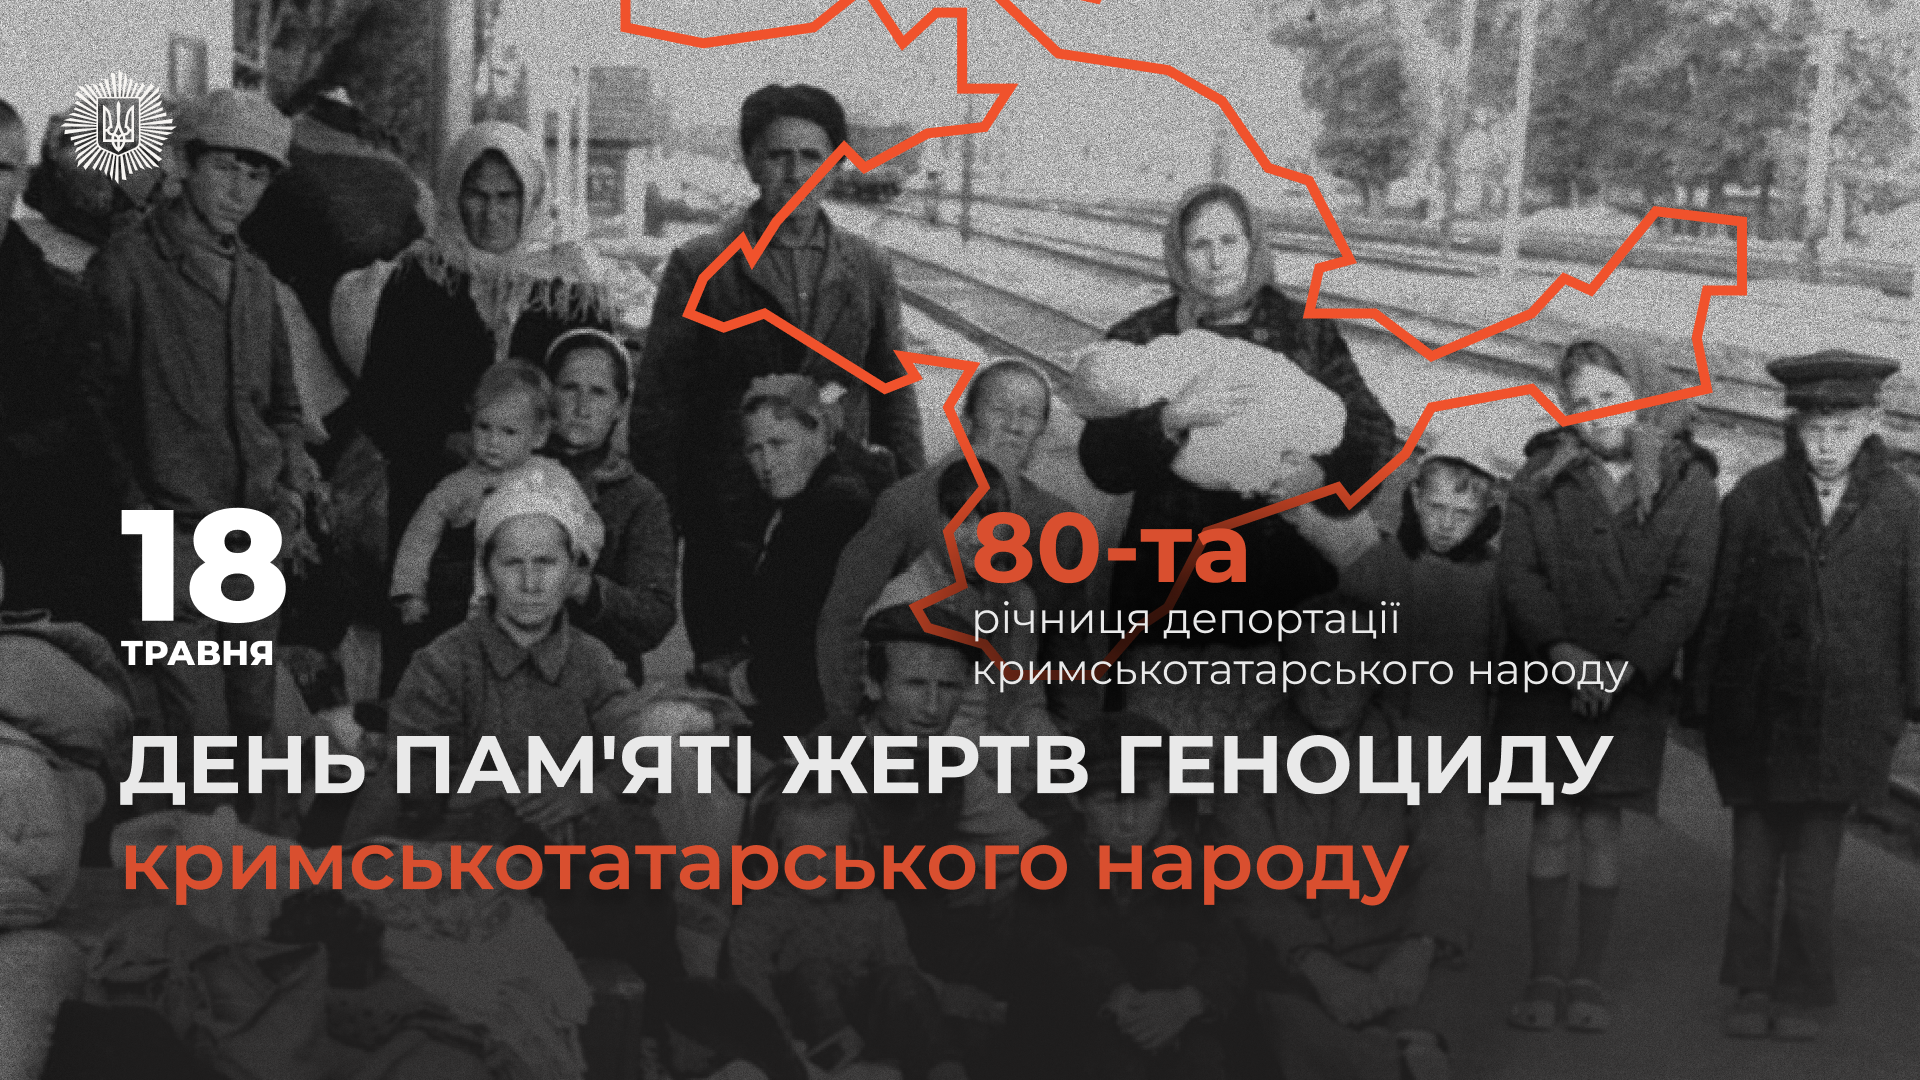 18 травня -День пам’яті жертв геноциду кримськотатарського народу